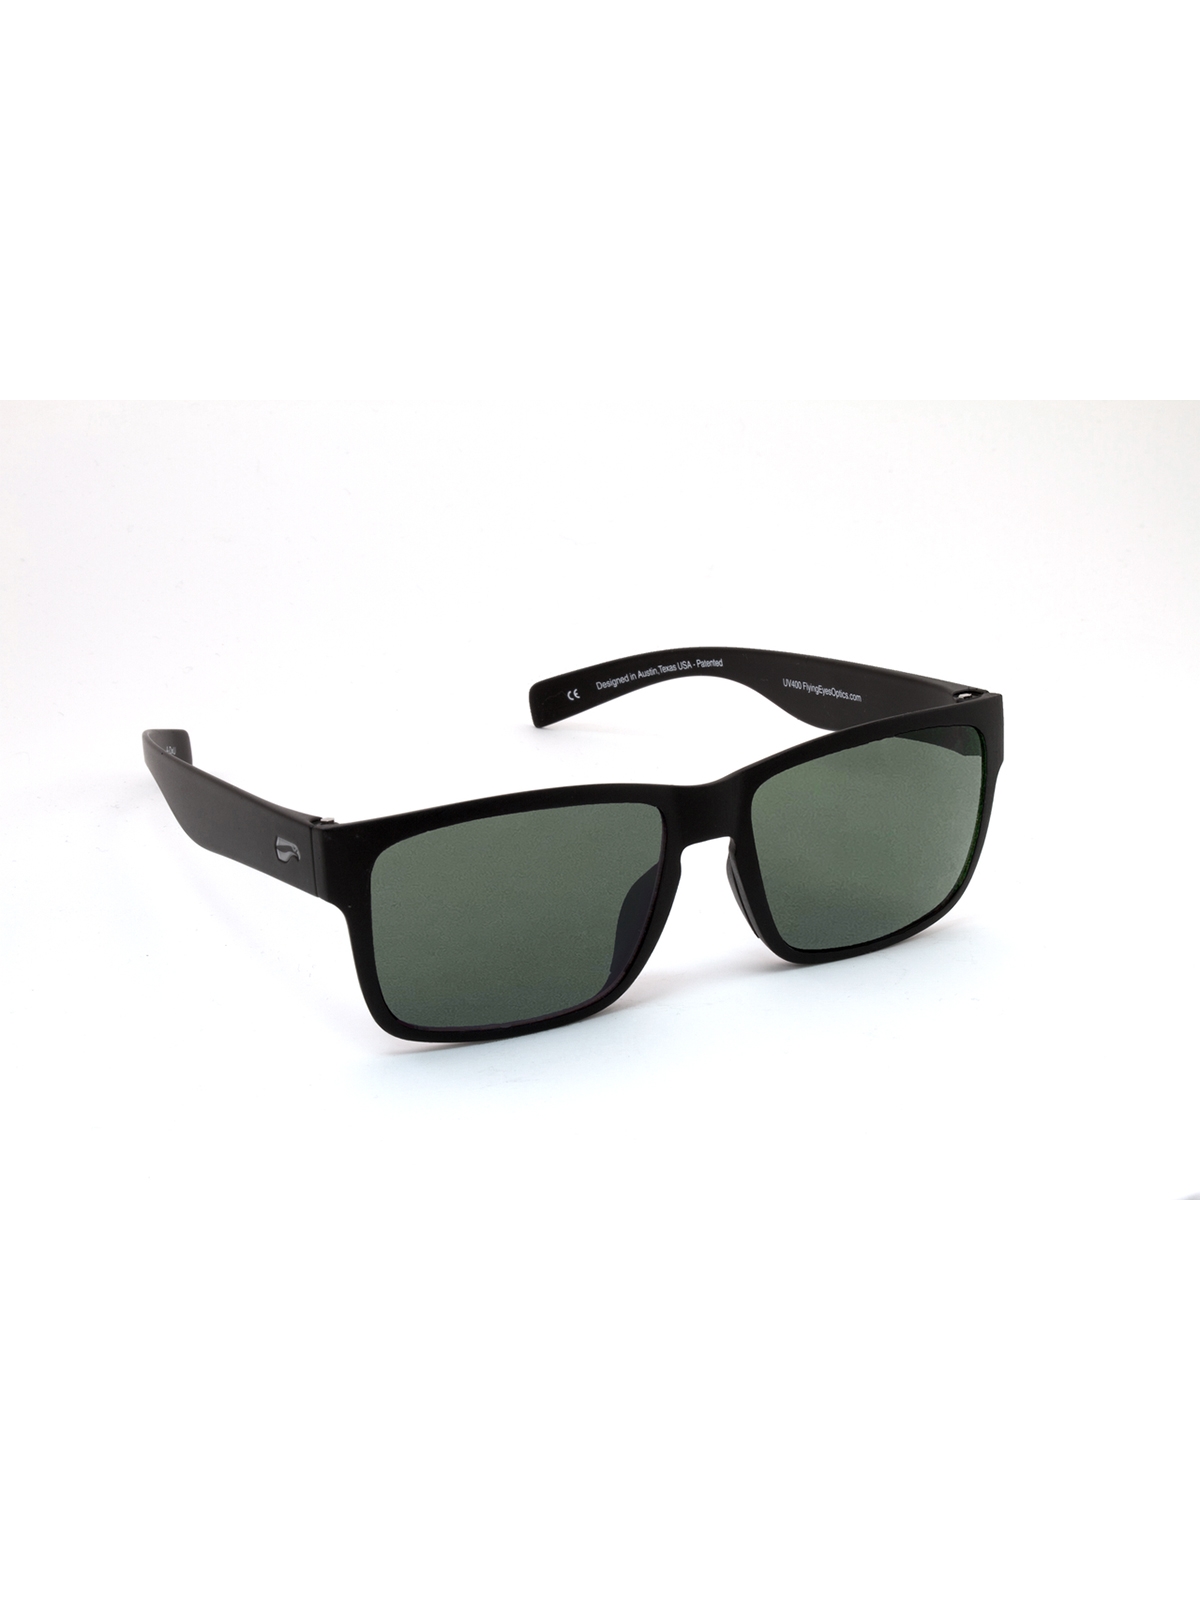 Flying Eyes Sunglasses Osprey - Matte Black Frame, G15 (Neutral Green) Lenses